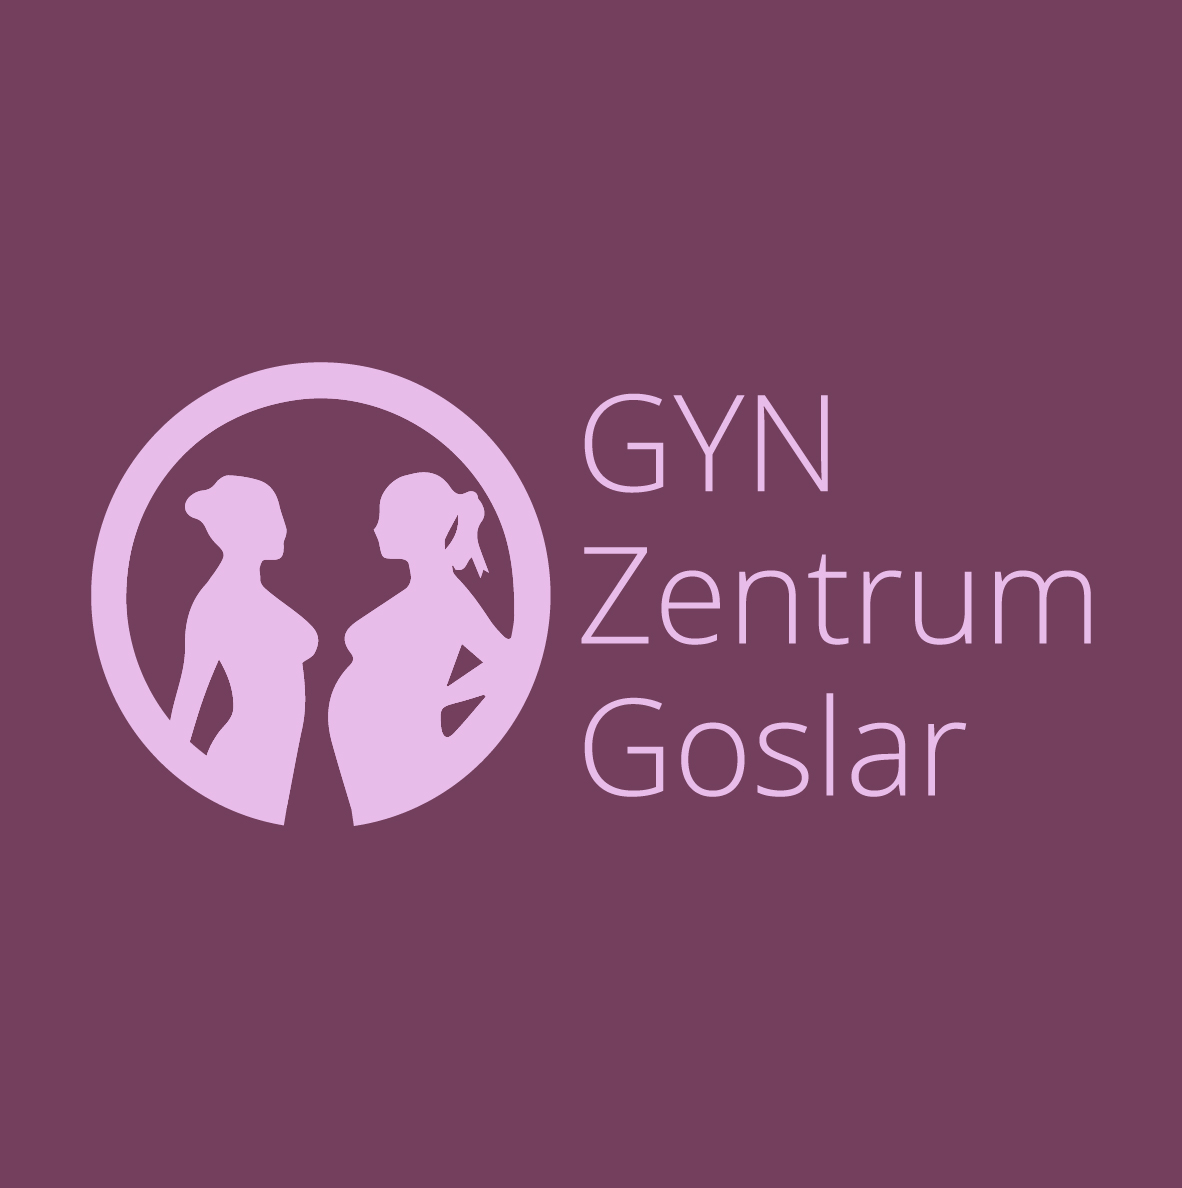 (c) Gyn-zentrum-goslar.de